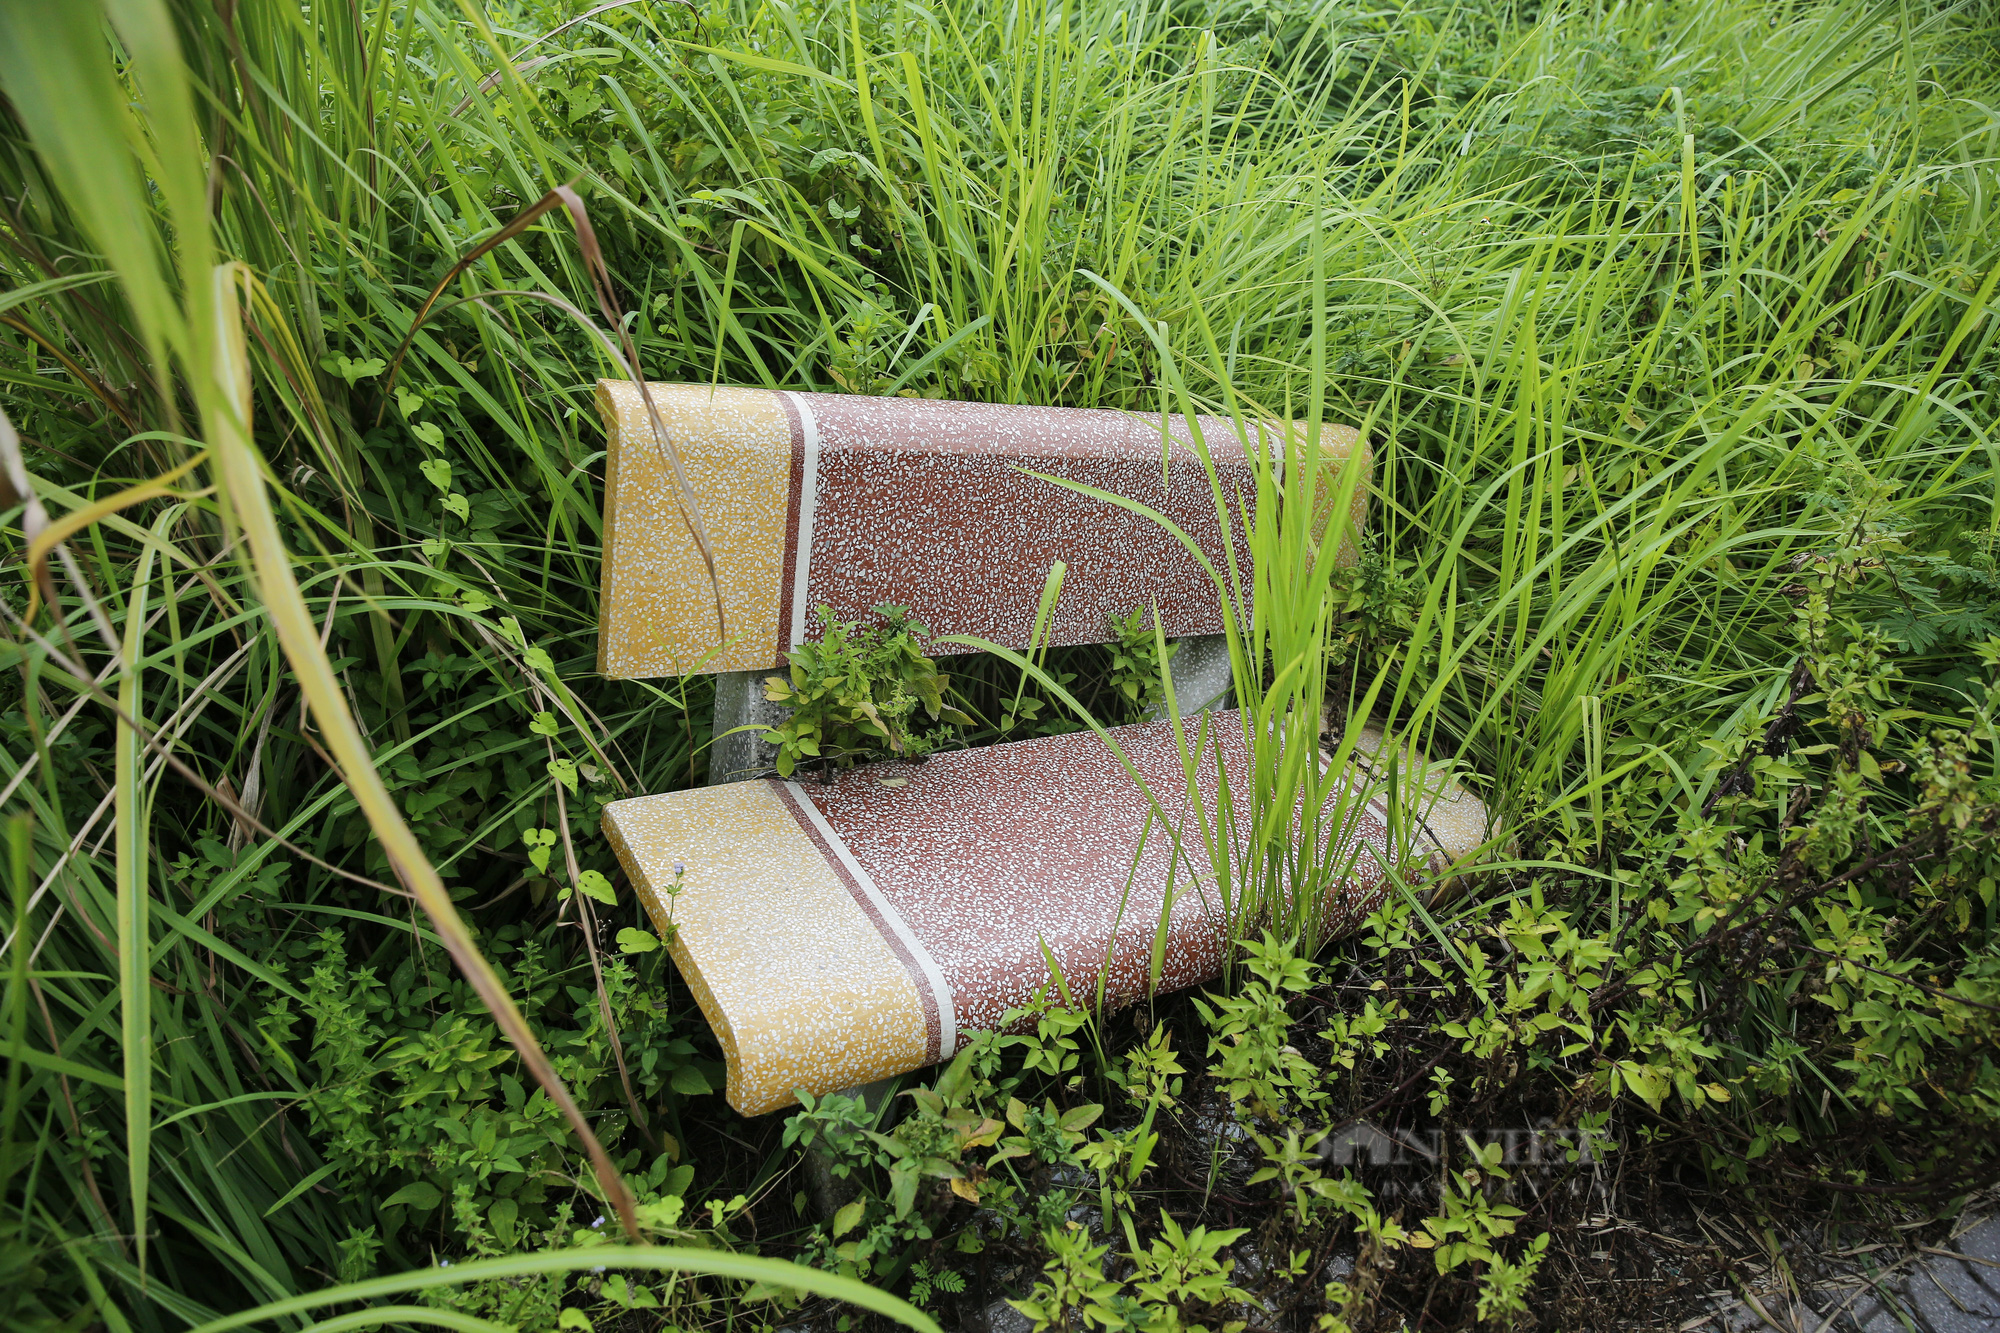 Hà Nội: Cây chết khô, ghế gãy, cỏ mọc um tùm tại công viên phường Trần Phú - Ảnh 3.